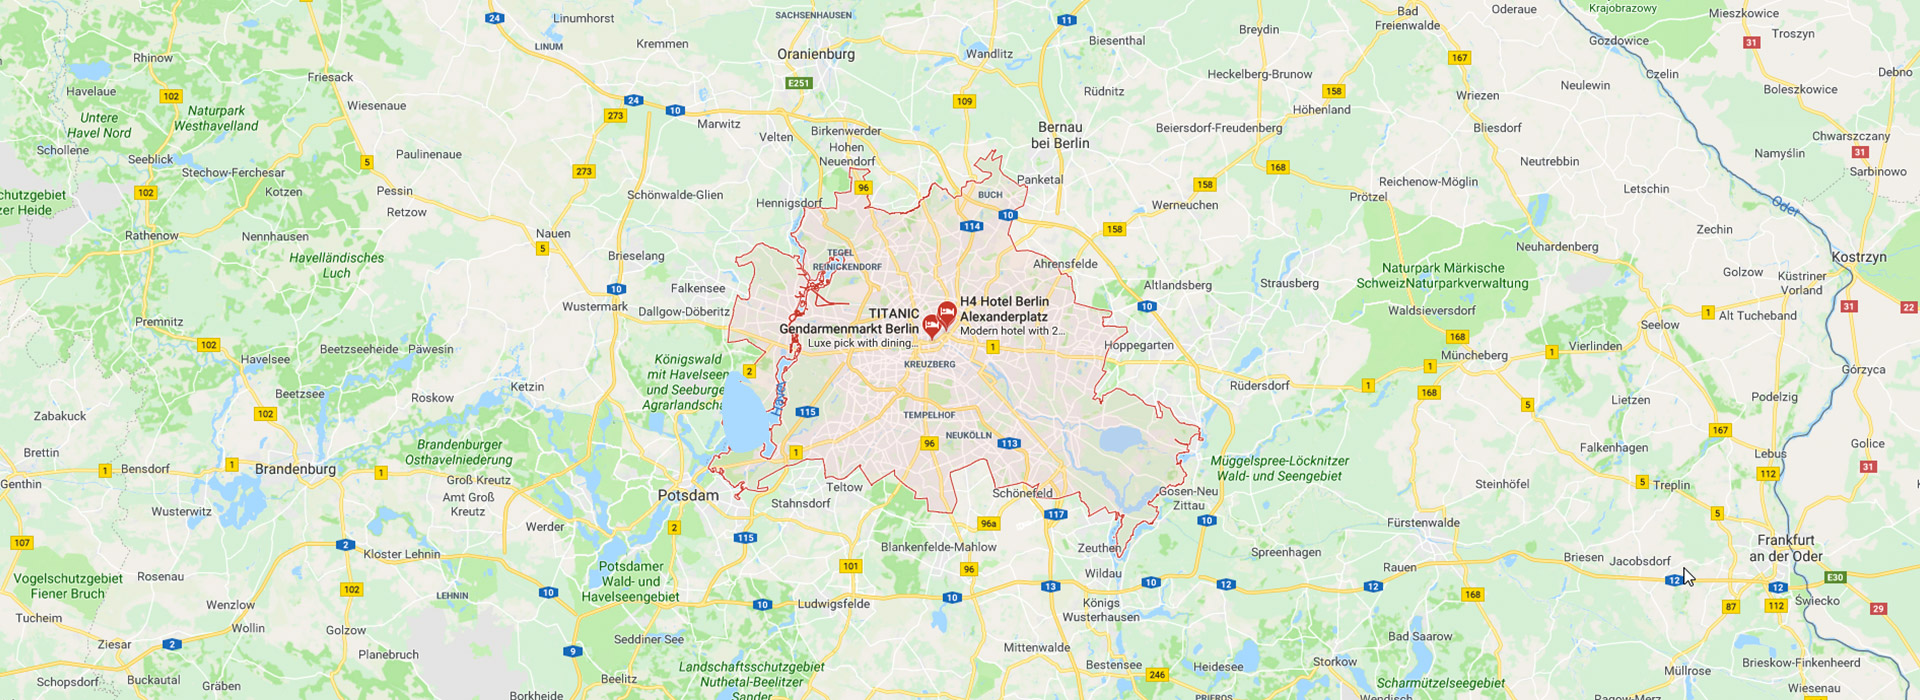 نقشه برلین